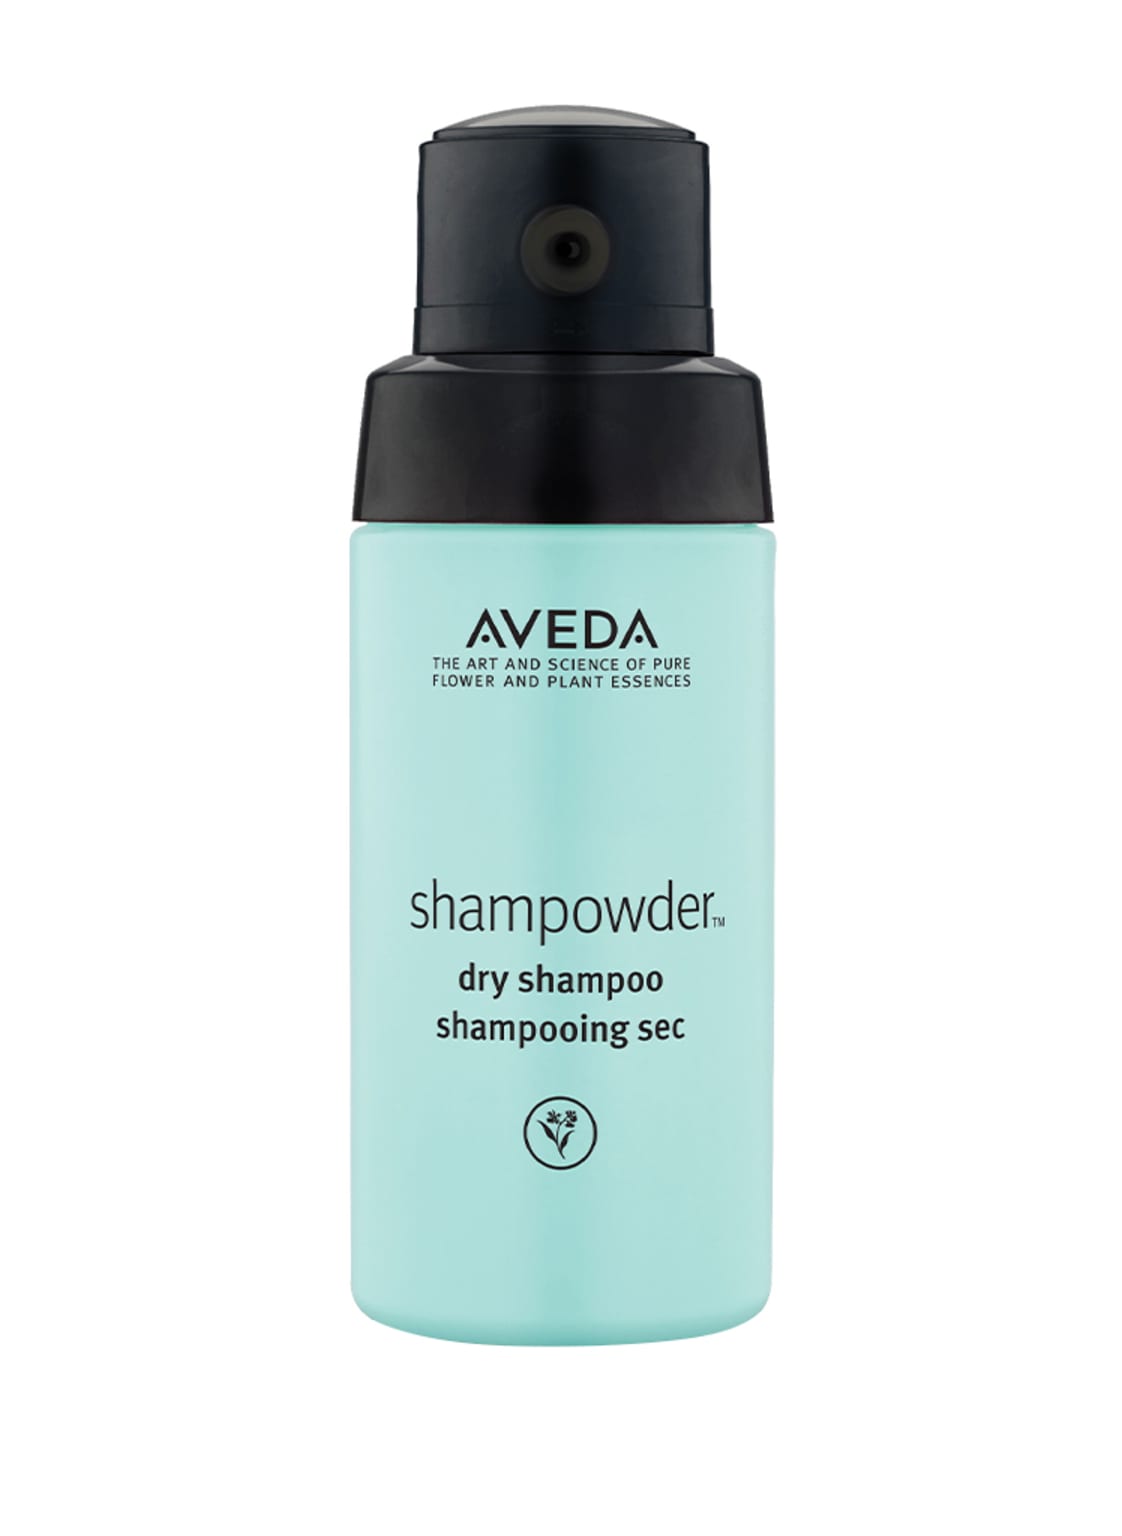 Aveda Shampowder Dry Shampoo 56 g von AVEDA